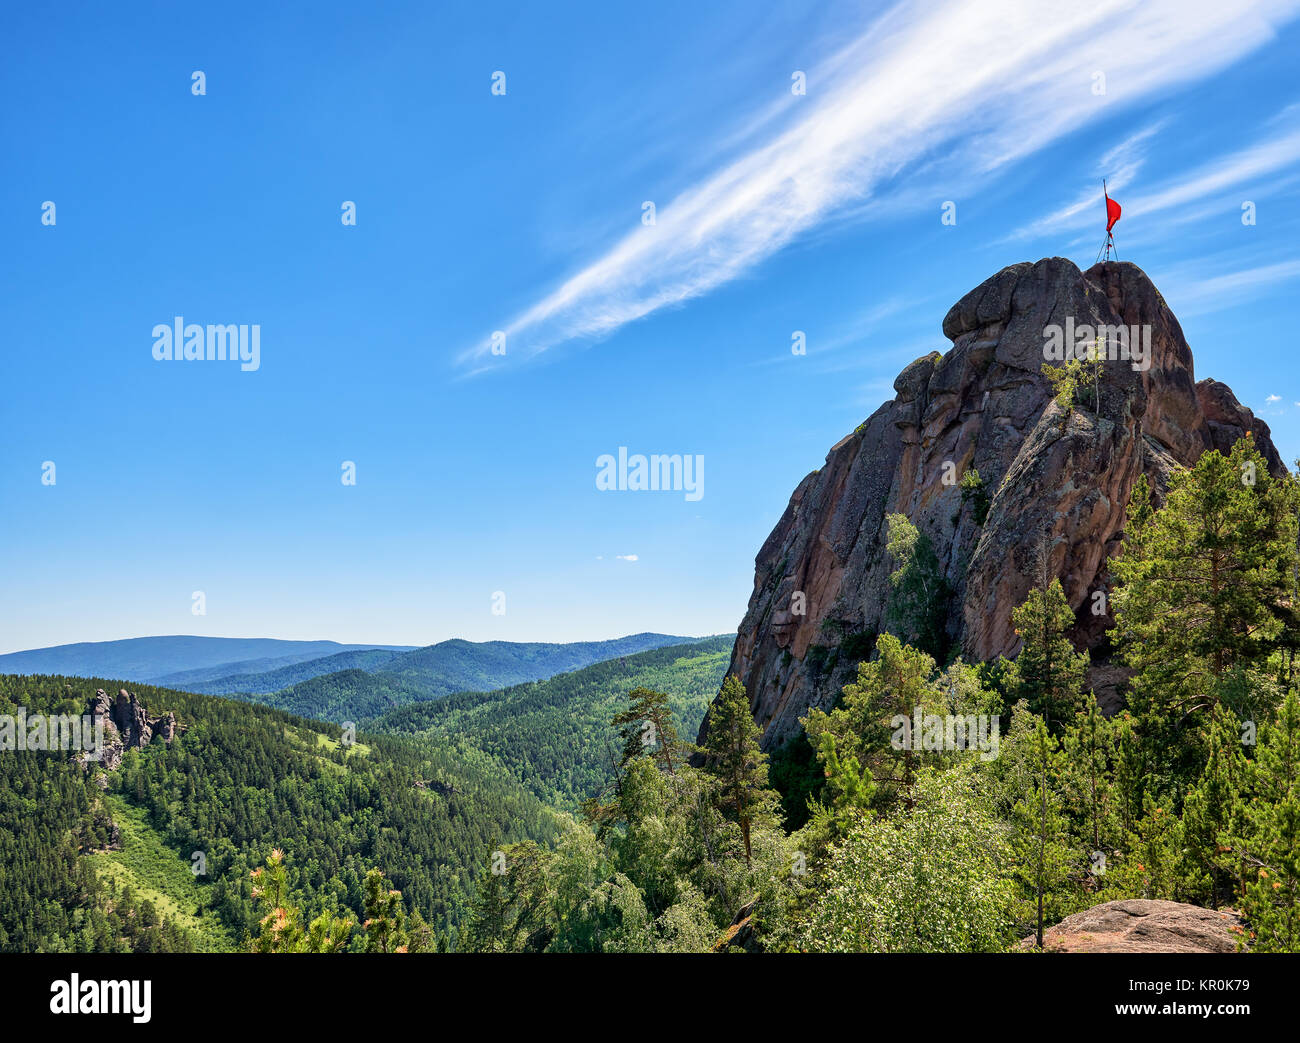 Takmak Rock. Les roches sont des vestiges de la taïga sibérienne. Réserve naturelle de Stolby (piliers). Région de Krasnoïarsk. La Russie Banque D'Images